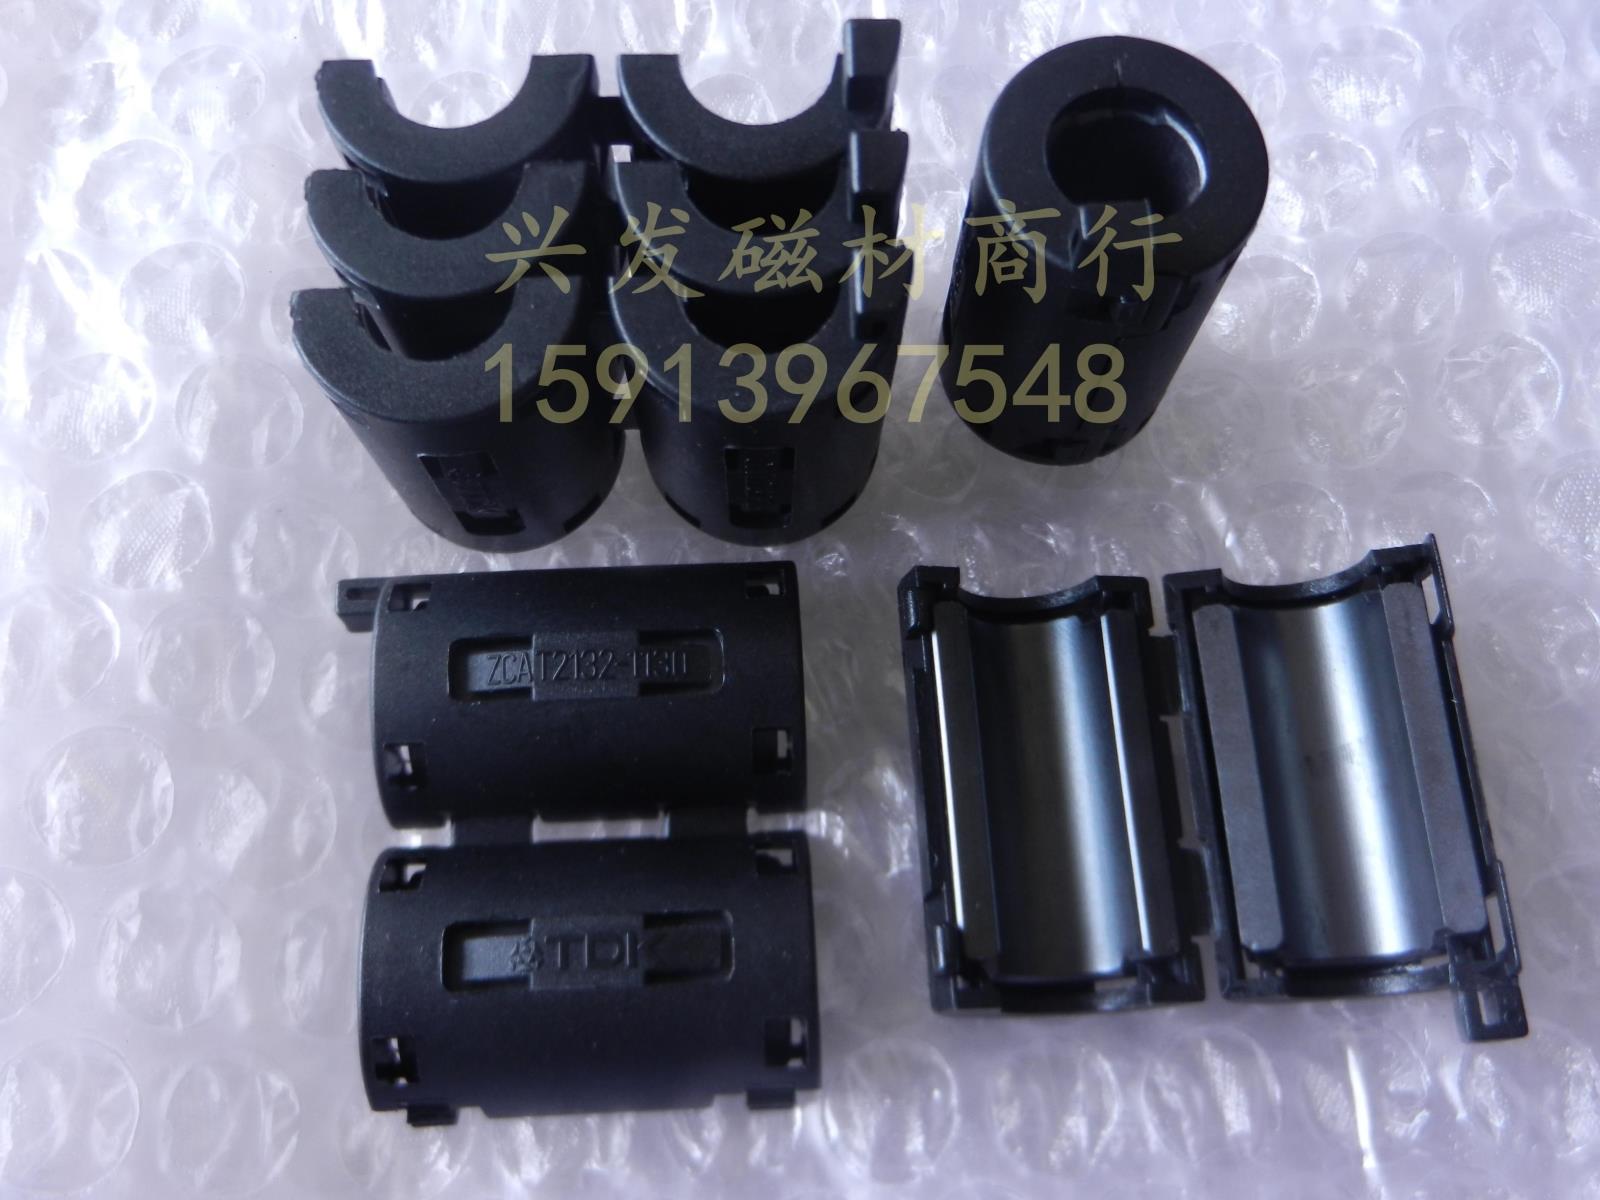 5pcs TDK black Φ11mm Cable Clamp Clip Noise Filters Ferrite Core Case